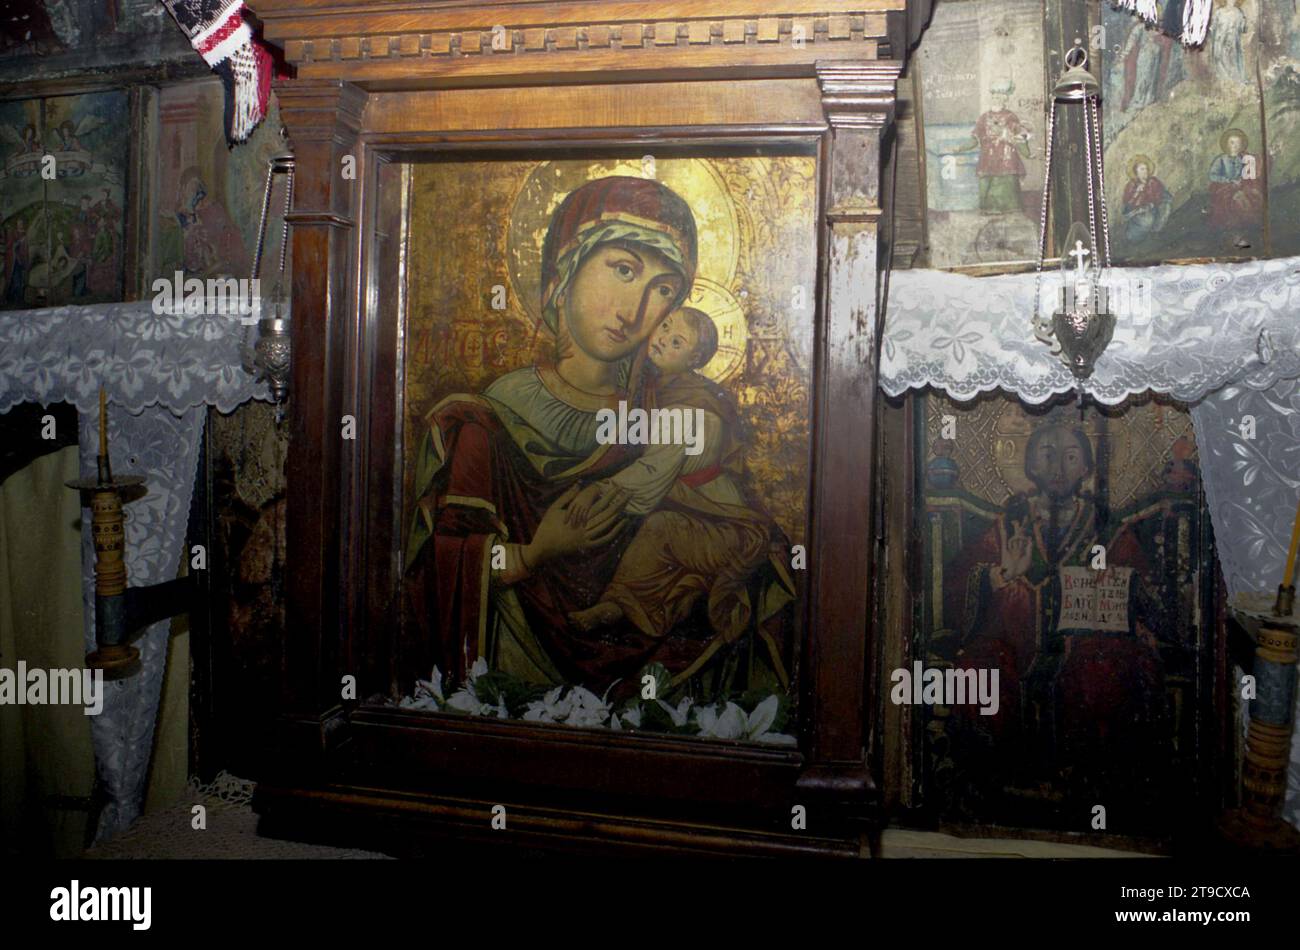 Contea di Salaj, Romania, circa 2000. L'icona Eleusa del XVII secolo del monastero di Strâmba, considerata un'icona miracolosa. Foto Stock